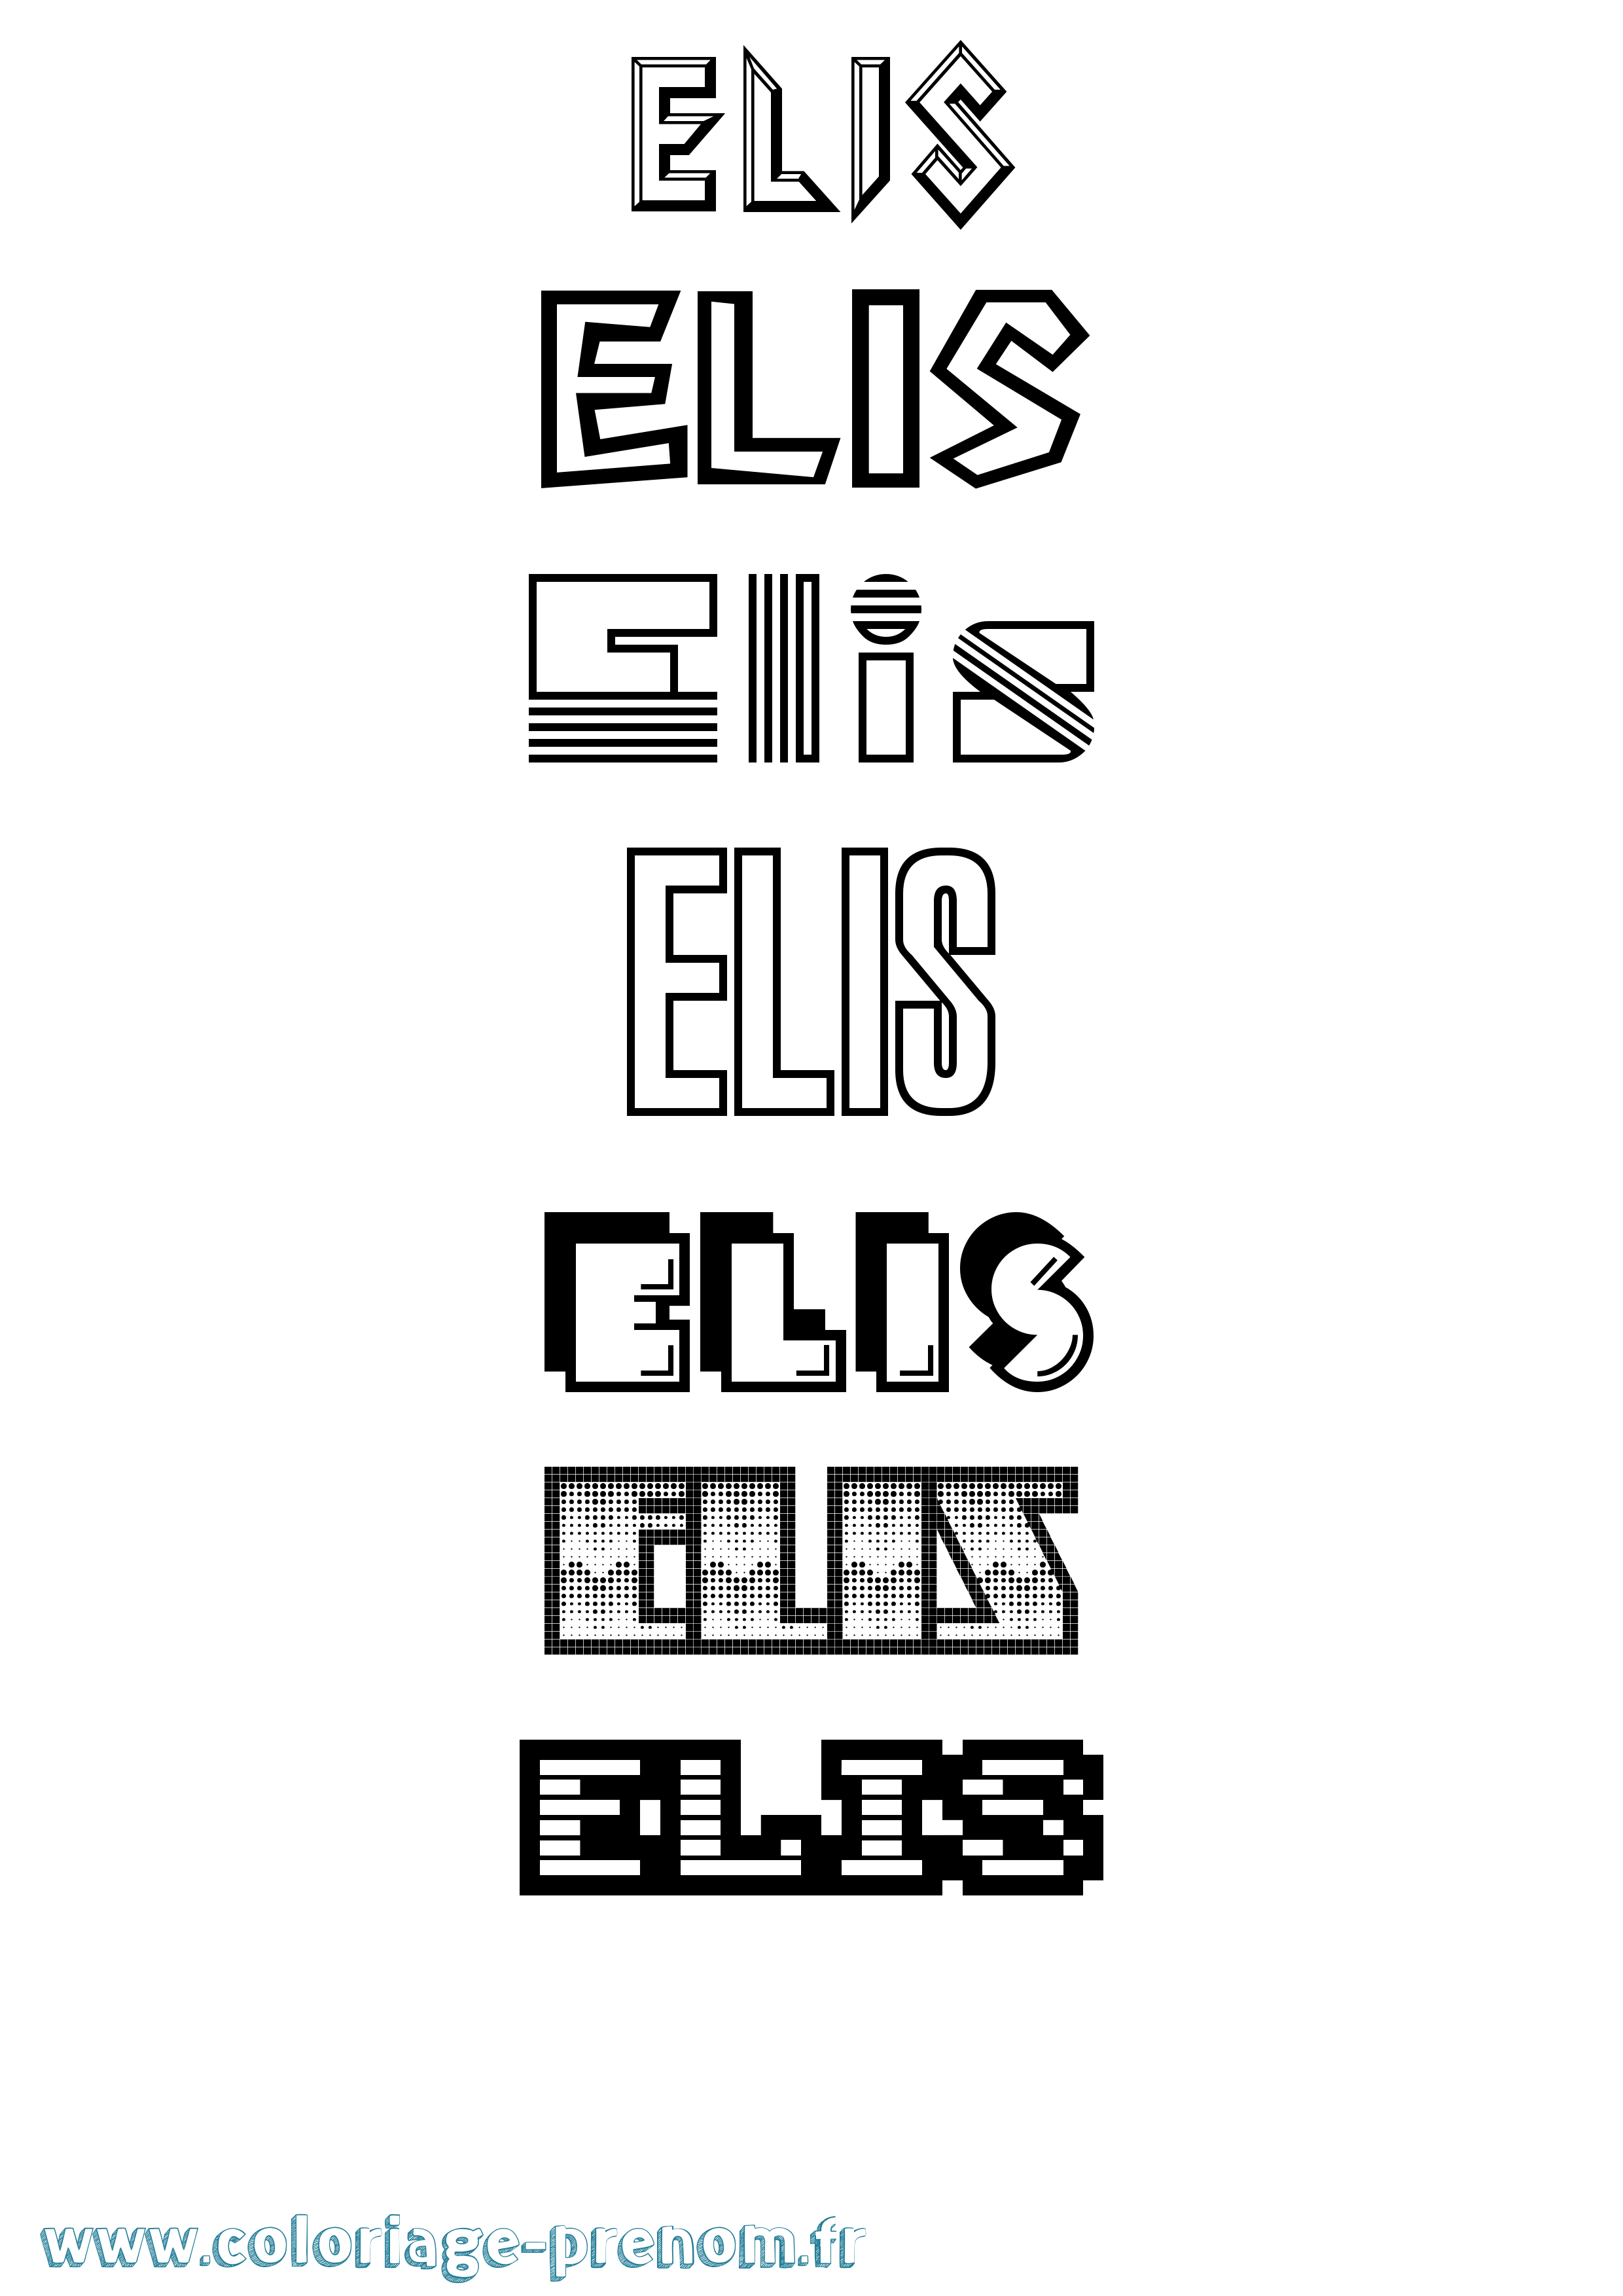 Coloriage prénom Elis Jeux Vidéos